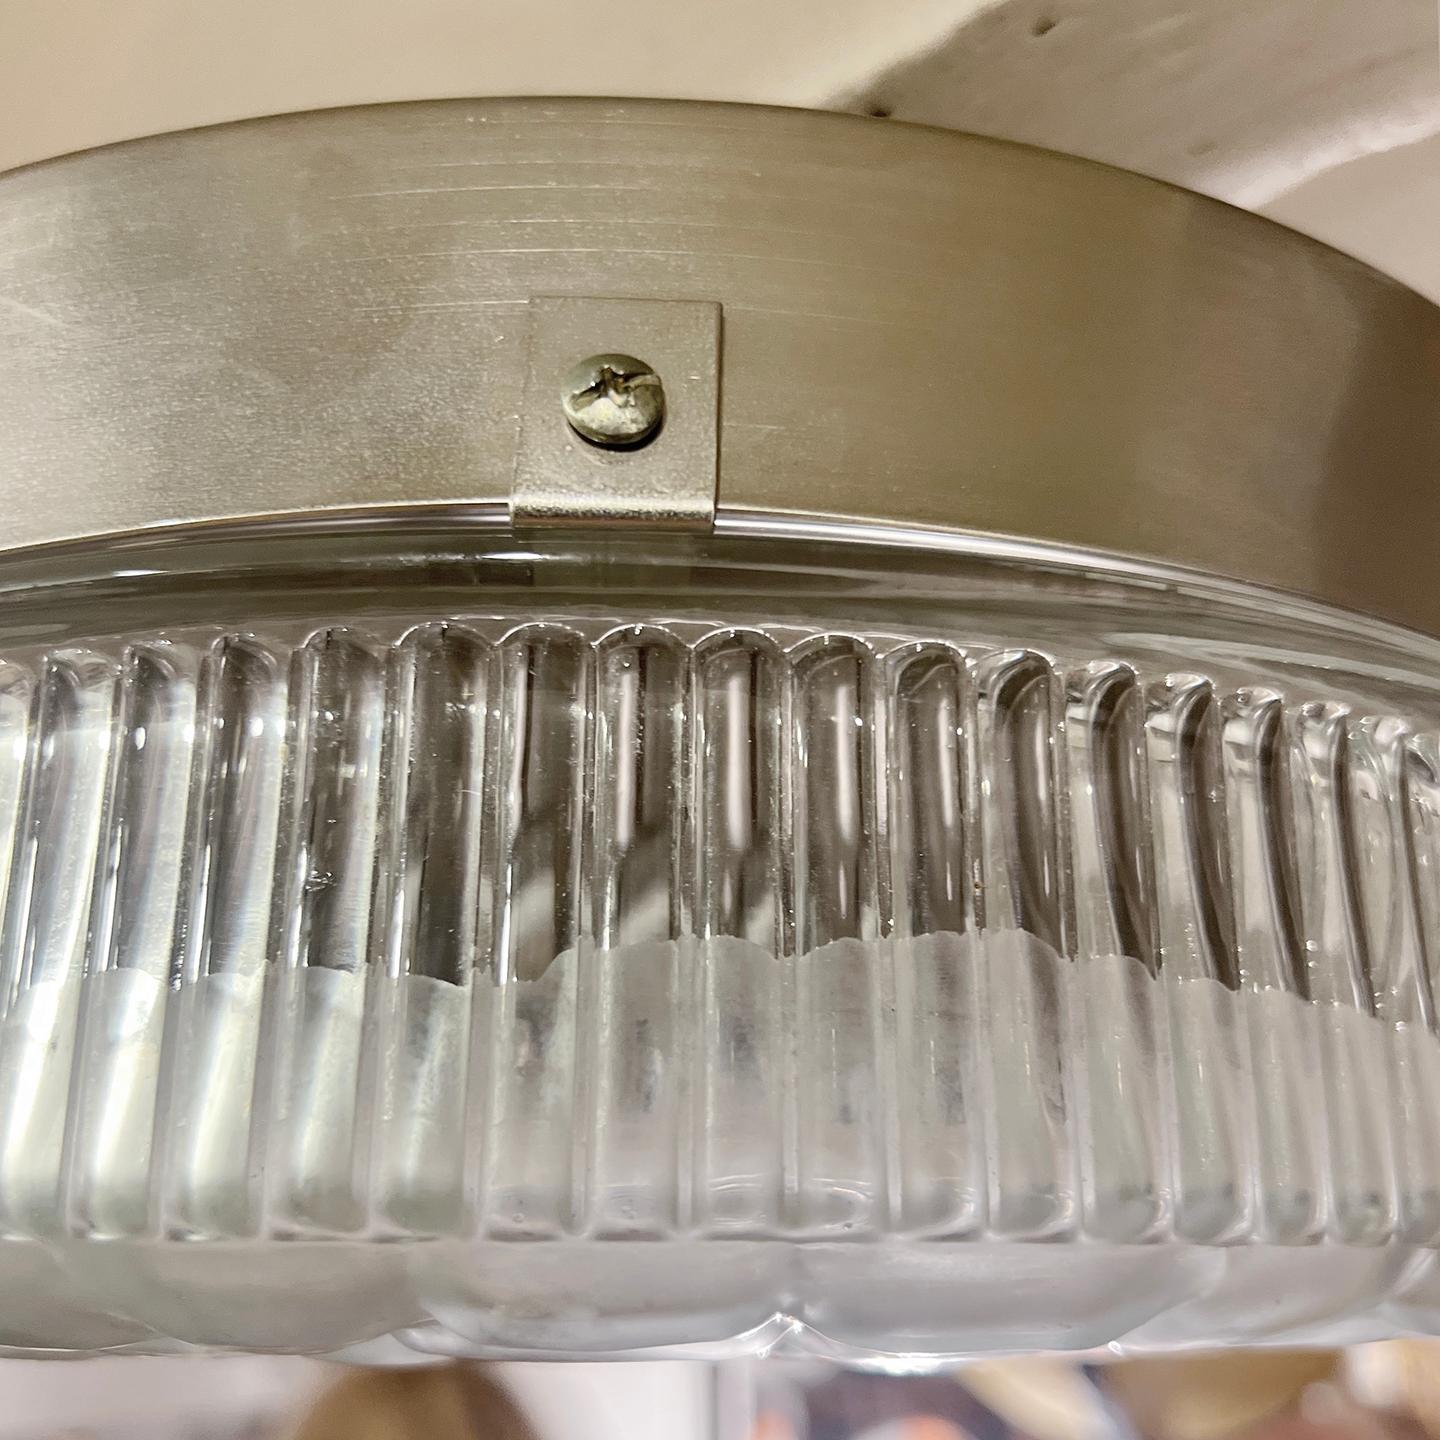 CIRCA 1940er Jahre Französisch geformt Glas flushmount Leuchte.

Abmessungen:
Durchmesser 12,25